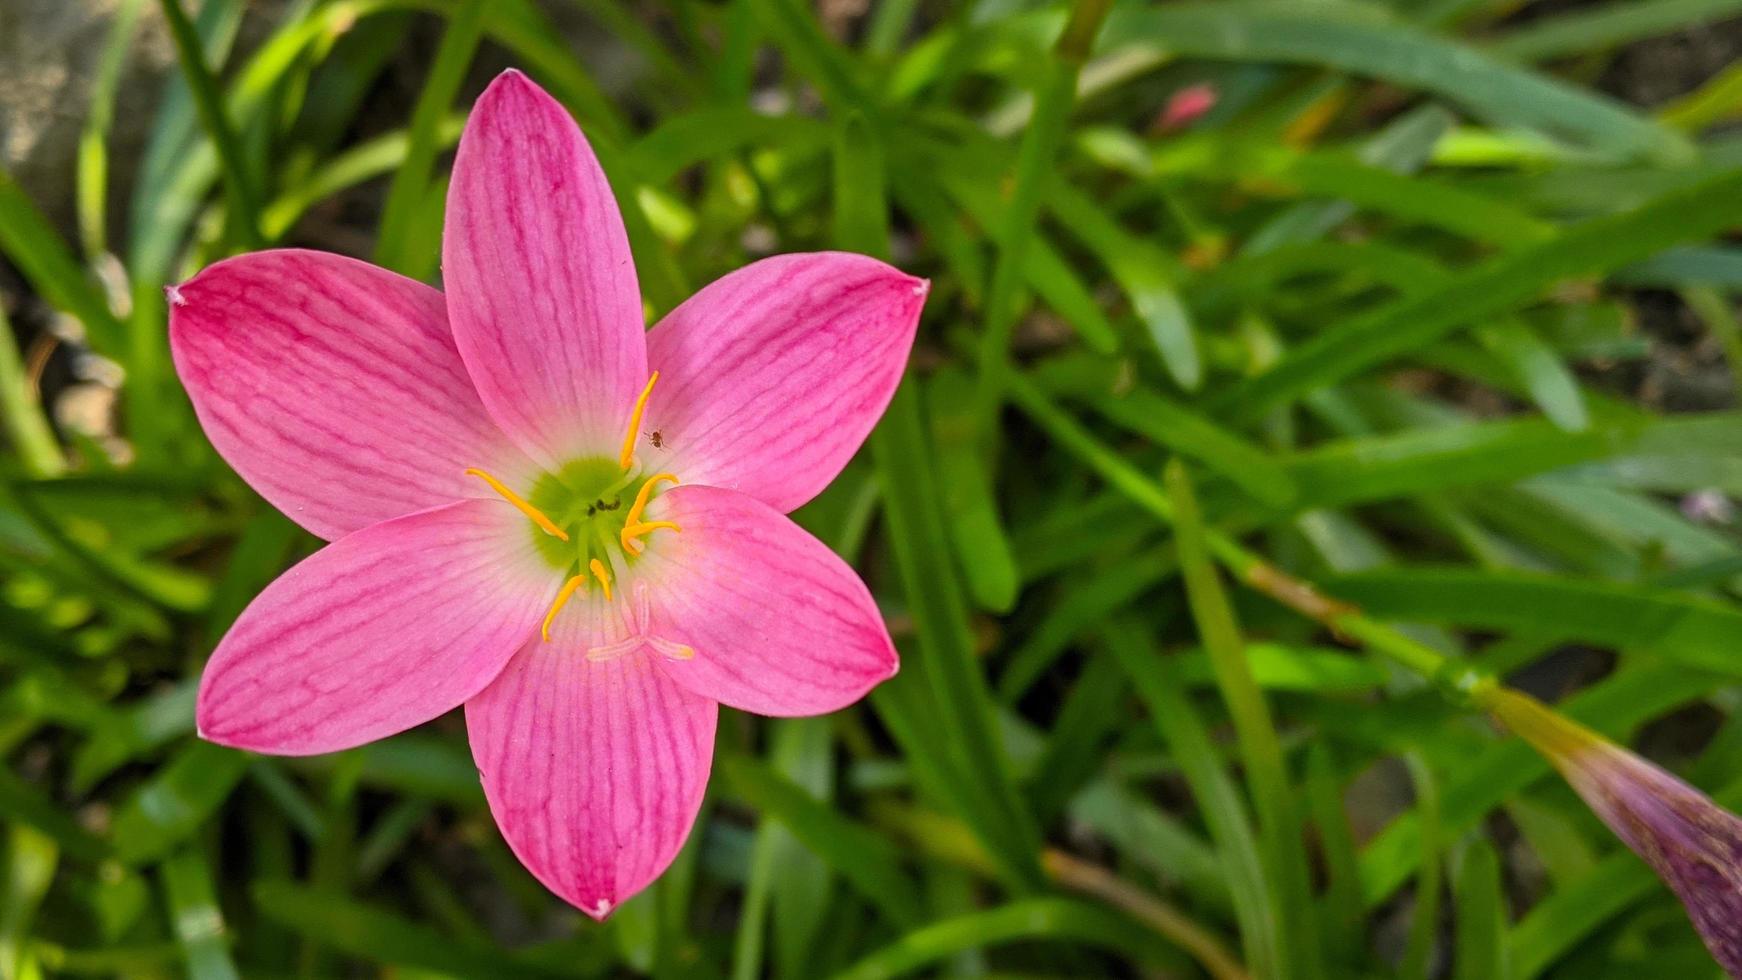 el lirio de lluvia rosa es una especie de planta del género zephyranthes o lirio de lluvia originaria de perú y colombia. foto